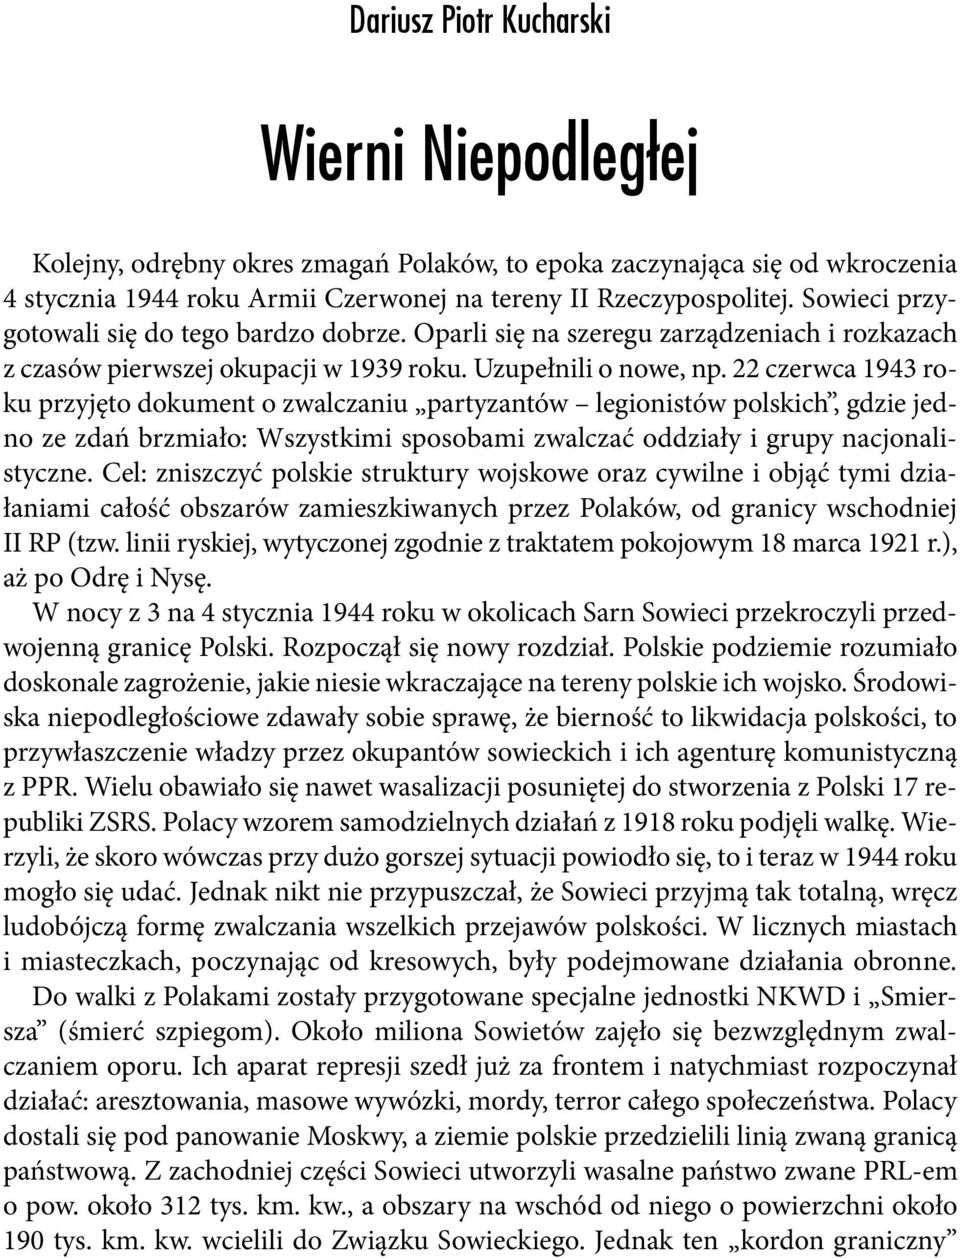 22 czerwca 1943 roku przyjęto dokument o zwalczaniu partyzantów legionistów polskich, gdzie jedno ze zdań brzmiało: Wszystkimi sposobami zwalczać oddziały i grupy nacjonalistyczne.